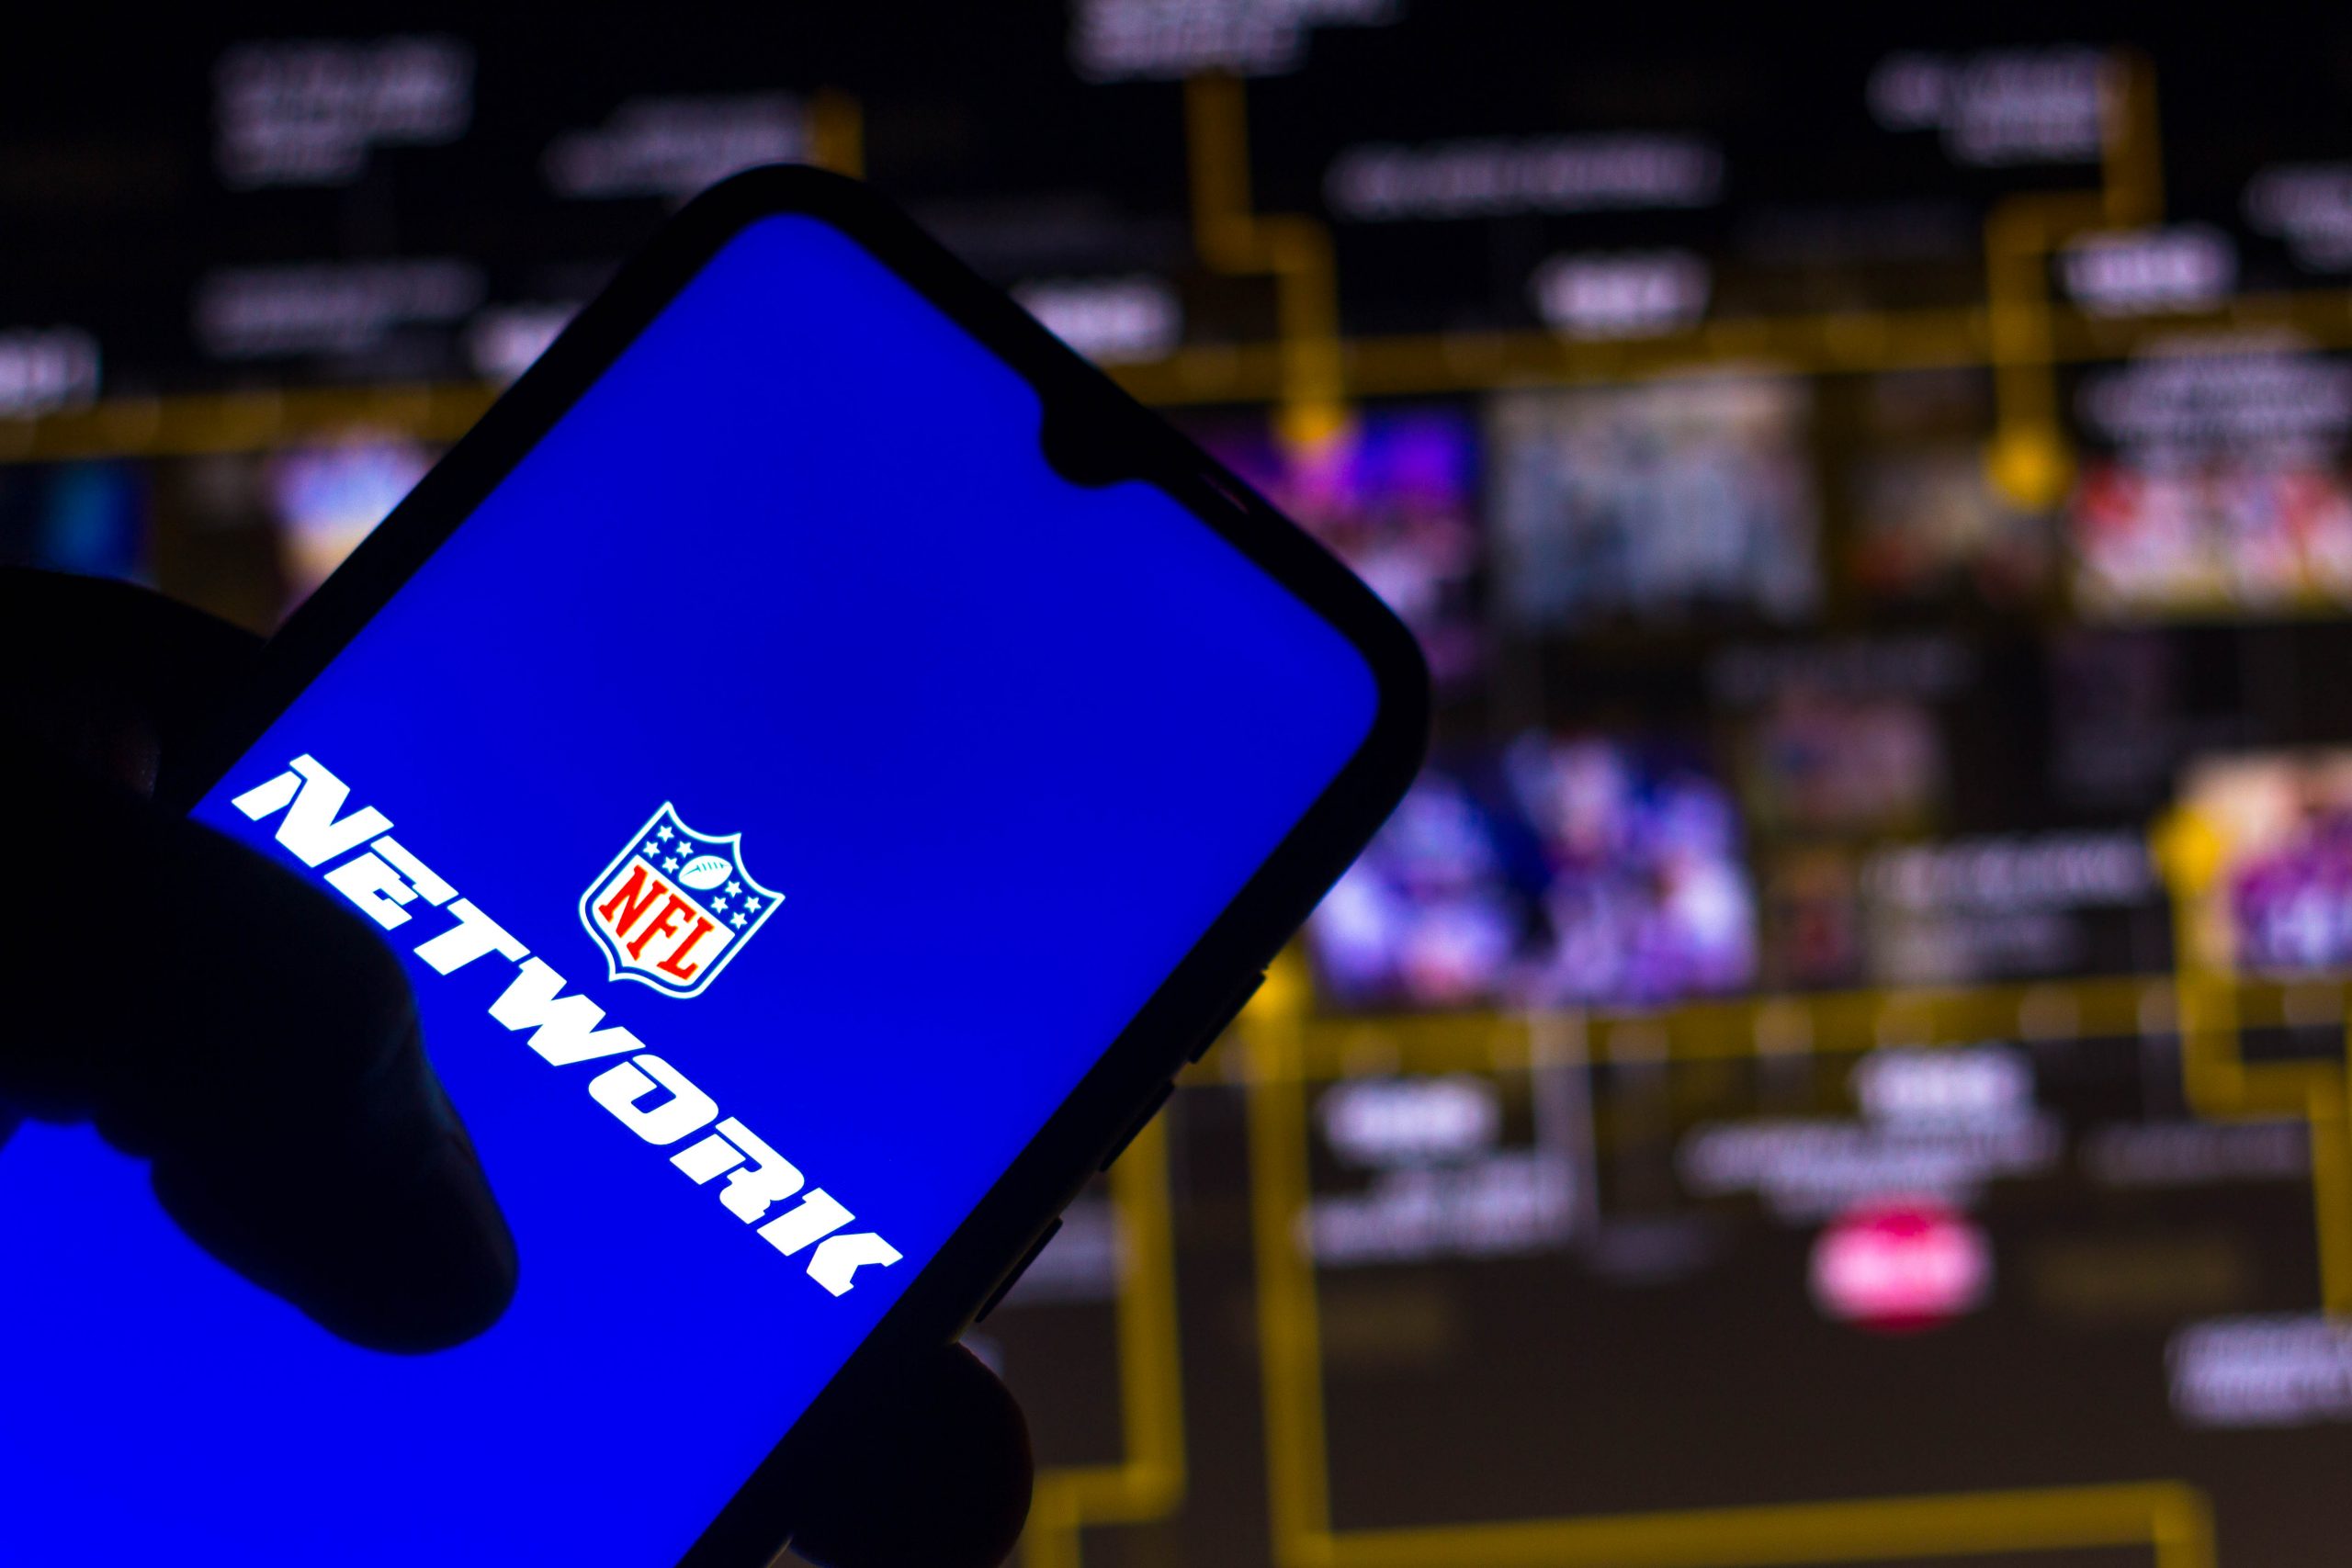 FootballR - NFL Network - Diese Beschreibung wurde automatisch generiert. Das Logo des NFL-Netzwerks wird auf einem Mobiltelefon angezeigt.